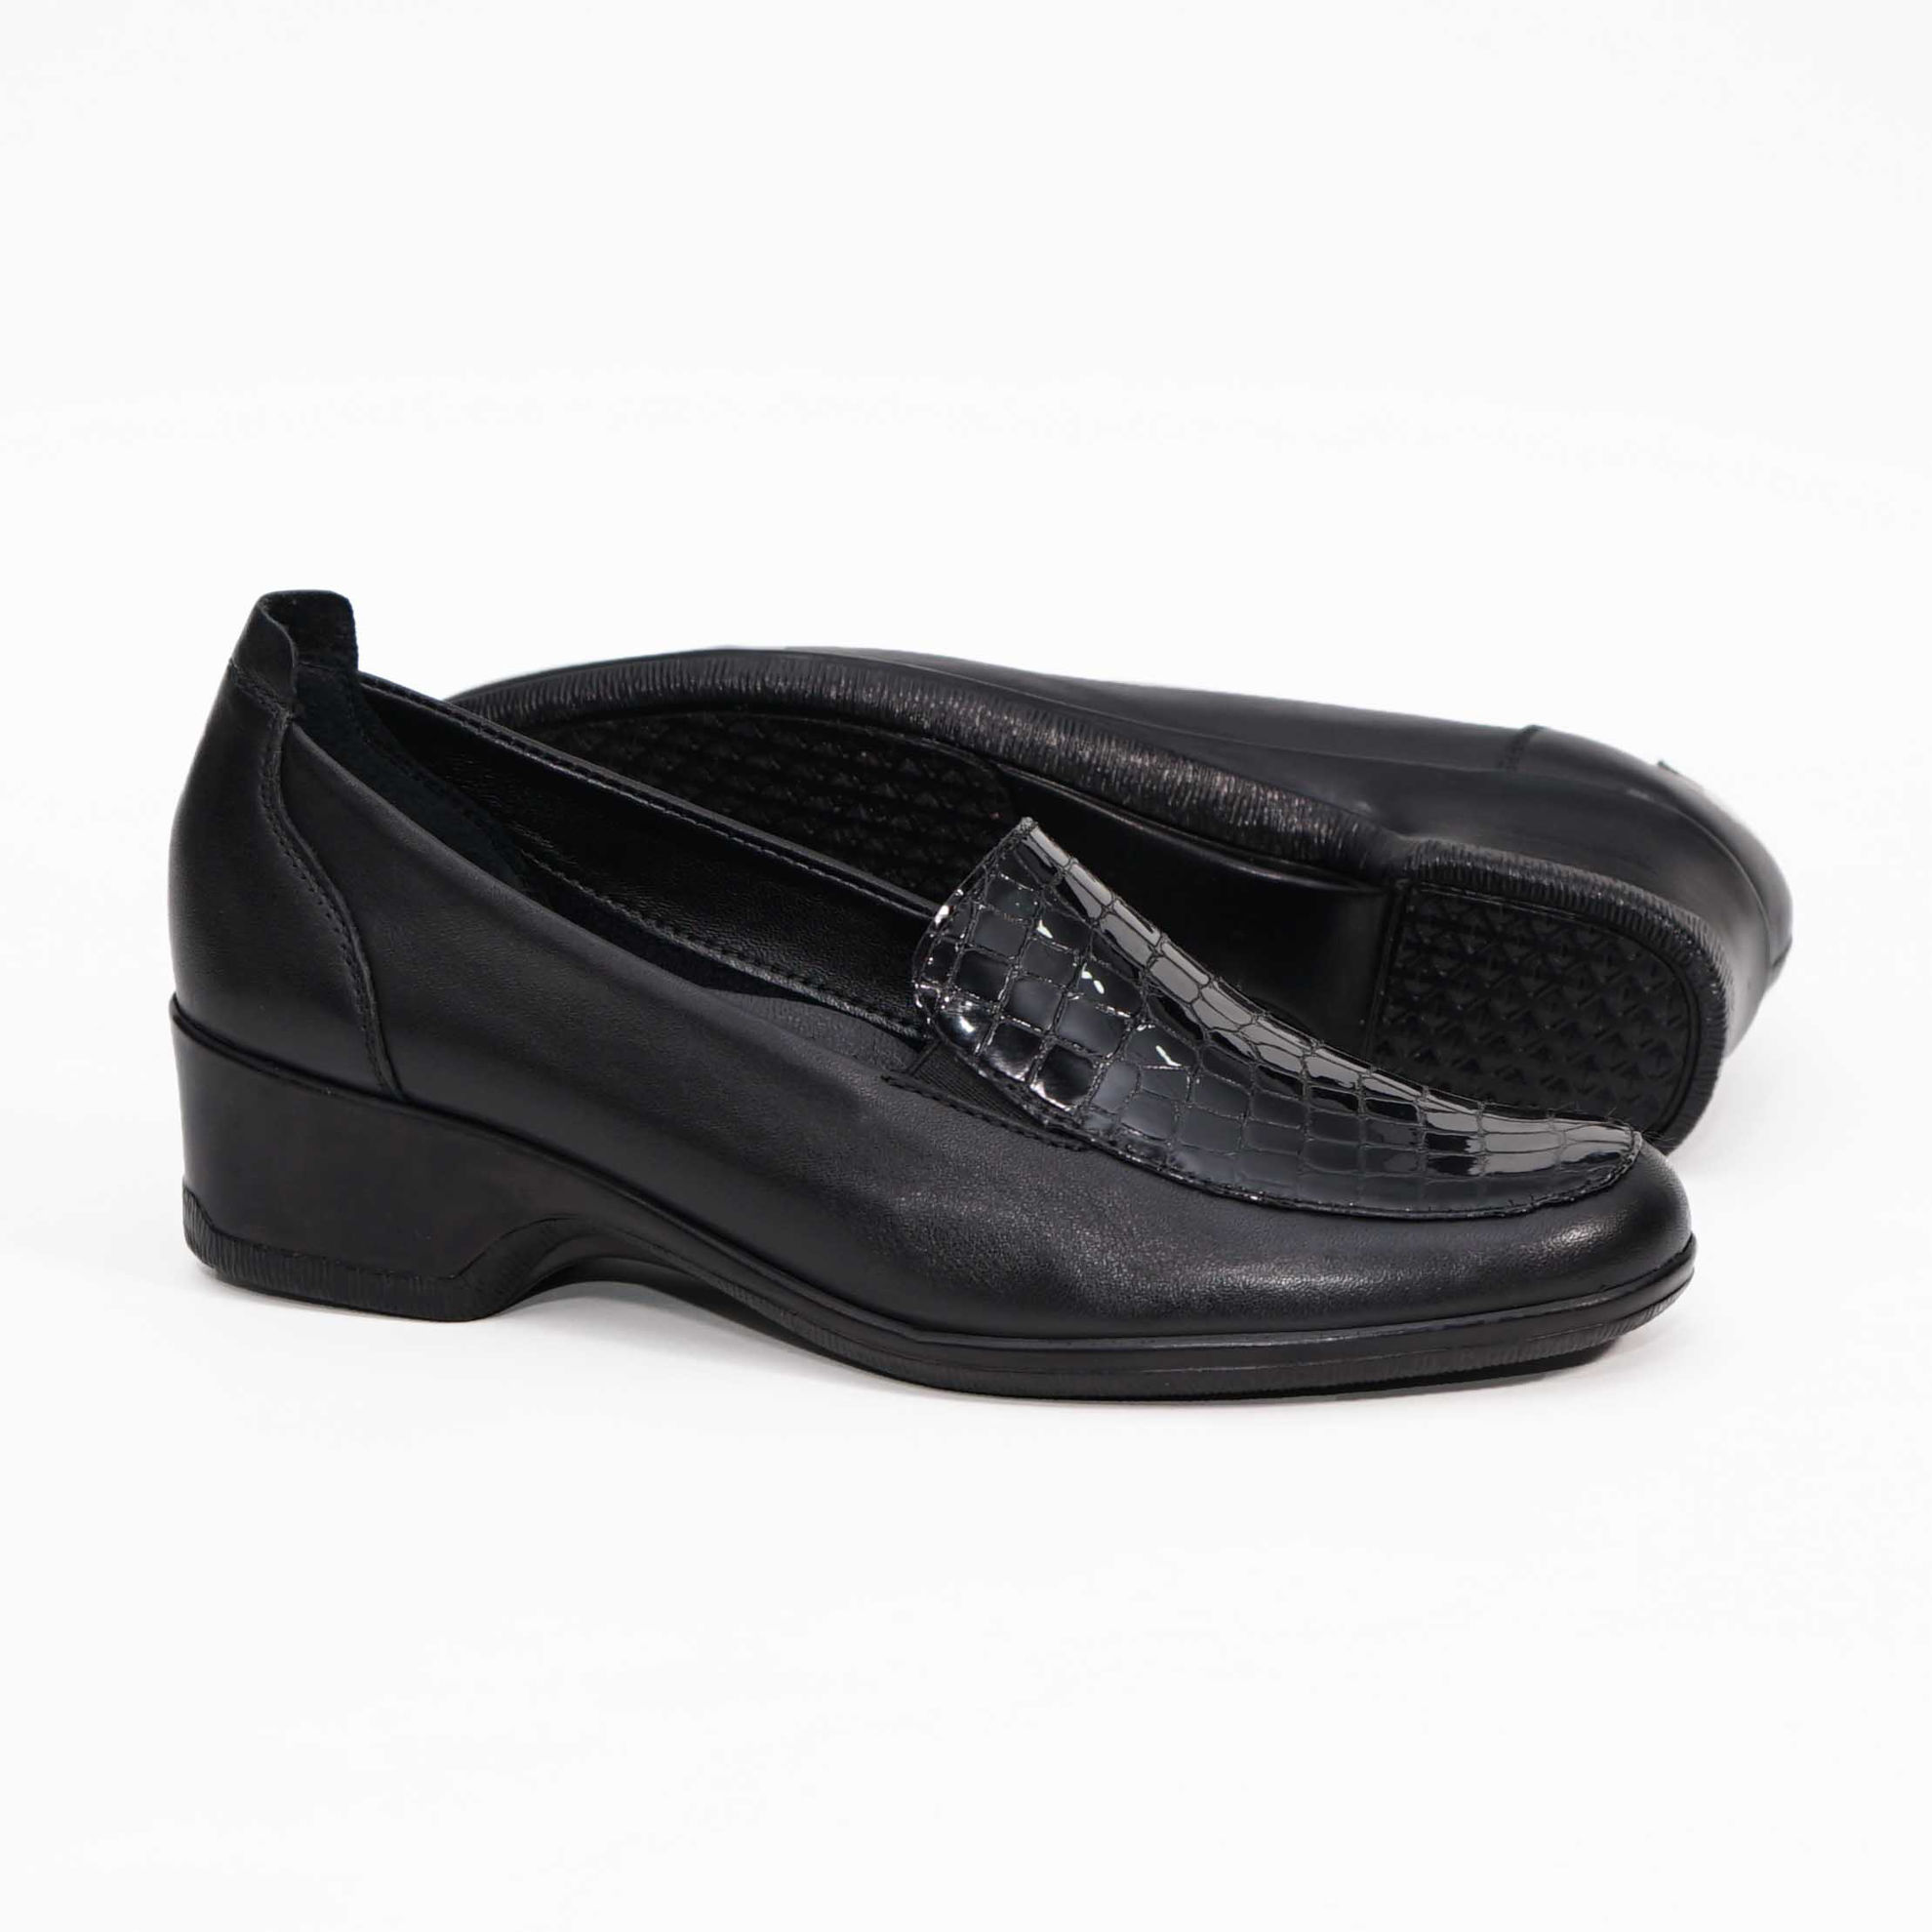 Imagine Pantofi damă piele naturală 141 Negru CR